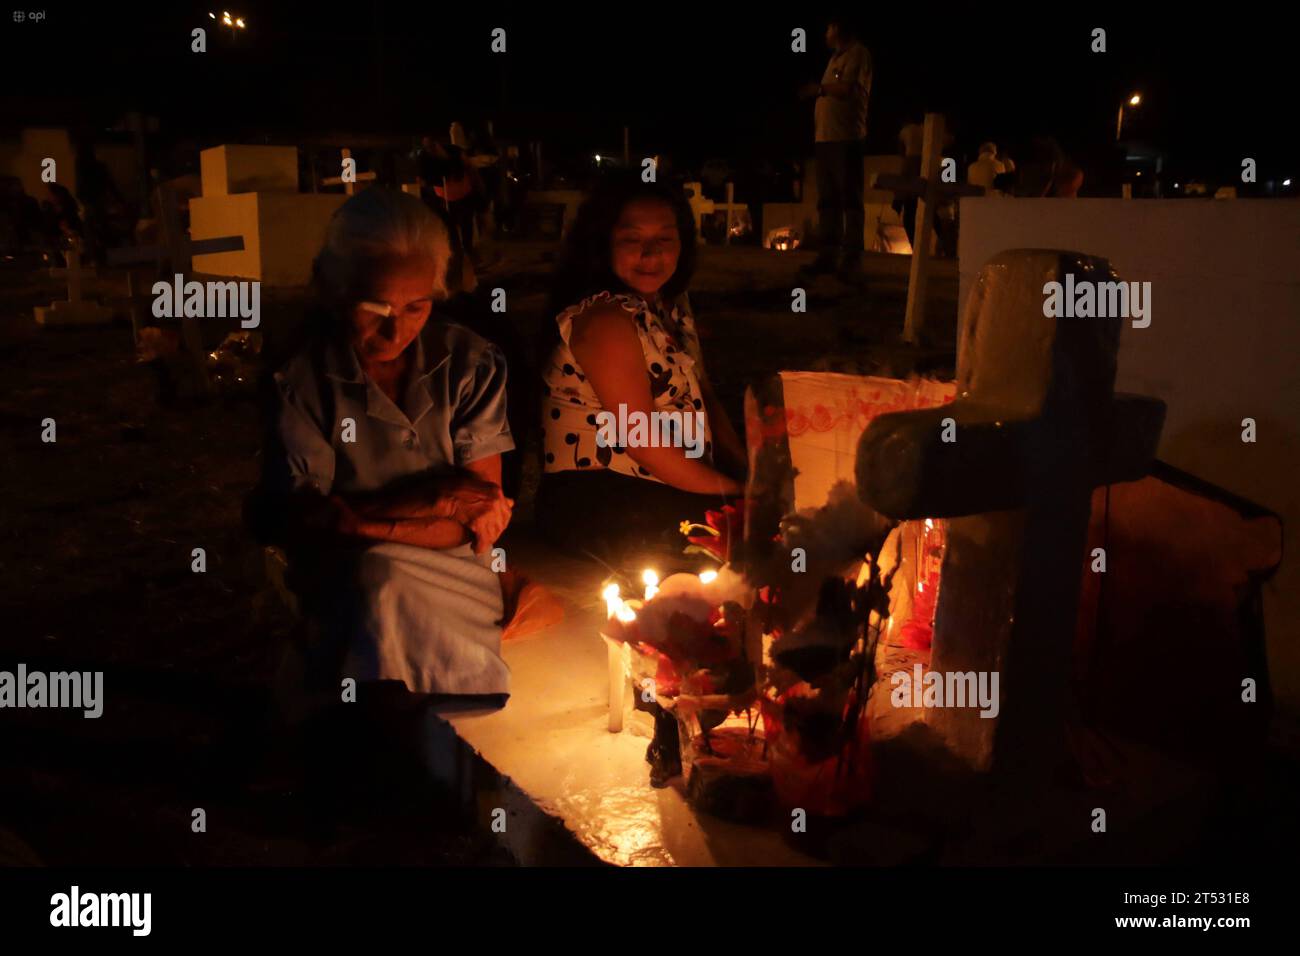 GYE-DIFUNTOS-VISITA NOCTURNA Sancan, Manabi, jueves 02 de noviembre de 2023 Como es costumbre familiares realizan la visita nocturna a sus difuntos en el cementerio de la comuna de Sancan, Manabi. Foto: CÃ sar Munoz/API Sancan Manabi Ecuador SOI-GYE-DIFUNTOS-VISITANOCTURNA-f89bcad68e993cb24b30f16d9dab21c0 ** GYE DIFUNTS VISITA NOTTURNA Sancan, Manabi, giovedì 02 novembre 2023 come è consuetudine, i familiari fanno una visita notturna ai loro defunti nel cimitero nel comune di Sancan, Manabi Photos CÃ sar Munoz API Sancan Manabi Ecuador SOI GYE DIFUNTS VISITA NOTTURNA f89bcad68e993cb24b30 Foto Stock